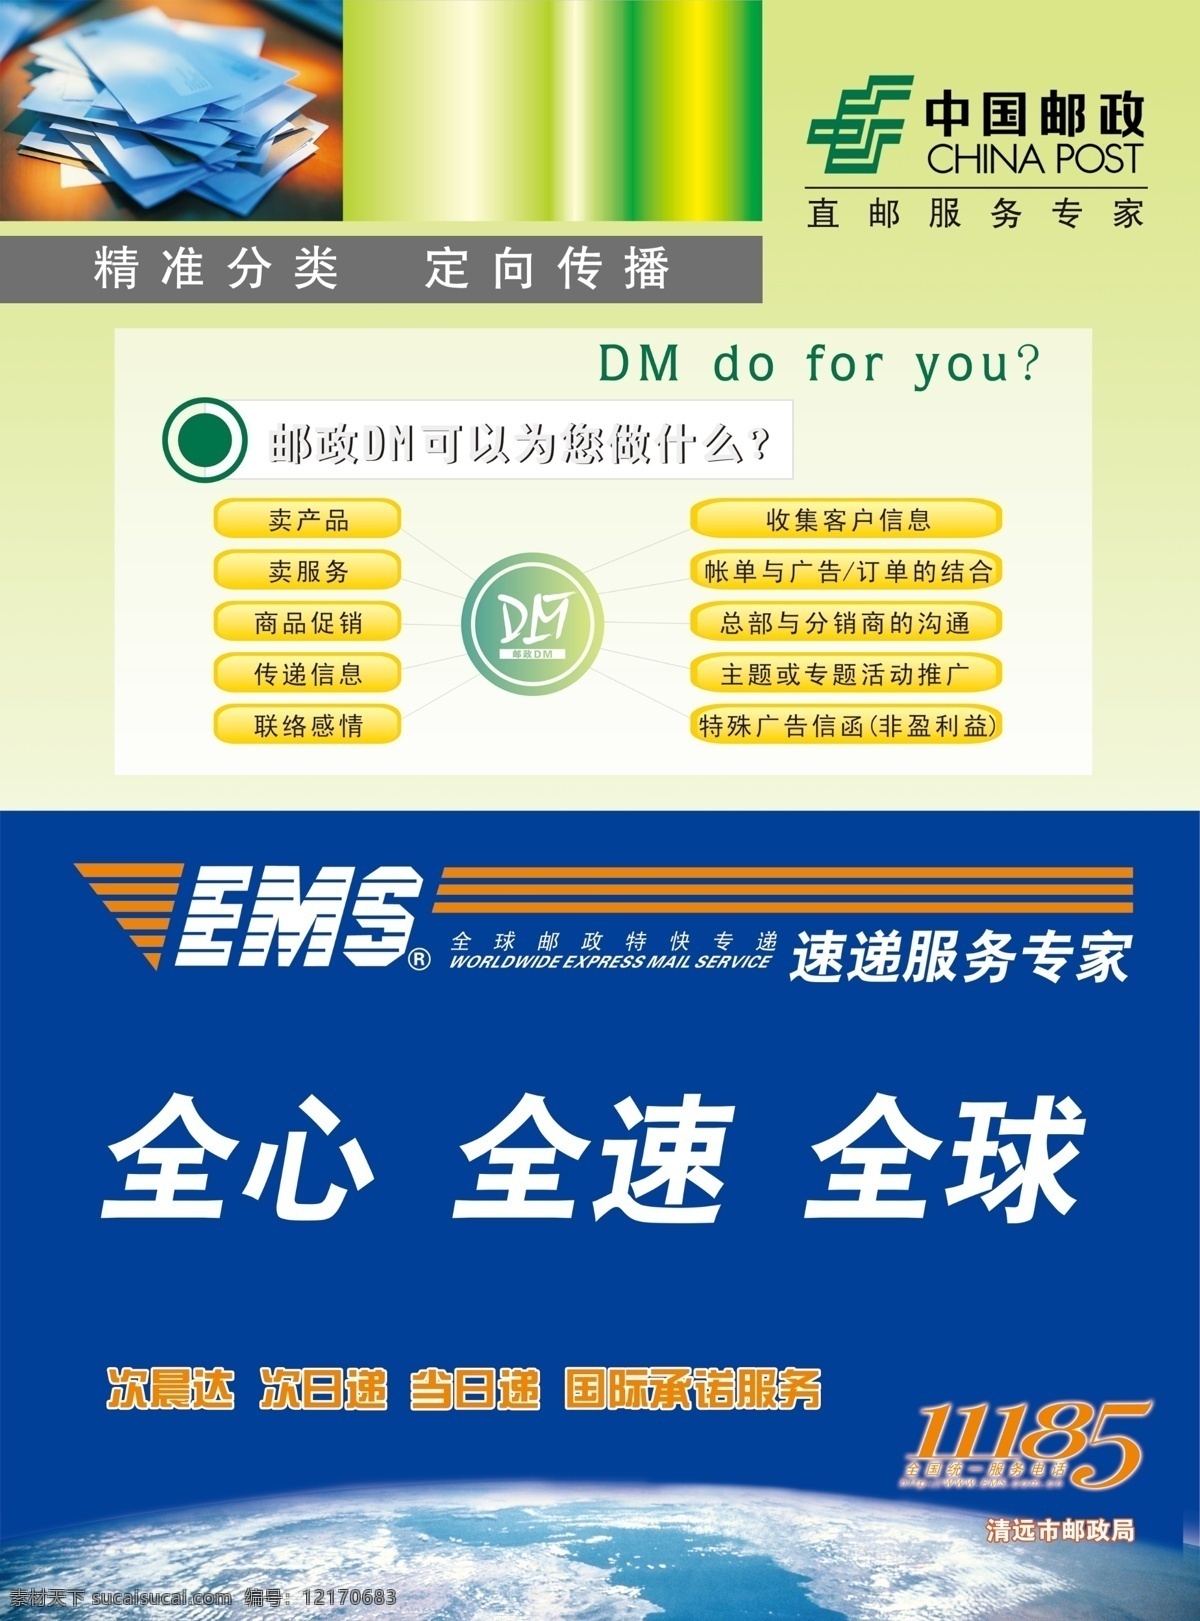 中国邮政 ems快递 邮政dm 直邮服务专家 公共服务行业 广告设计模板 源文件